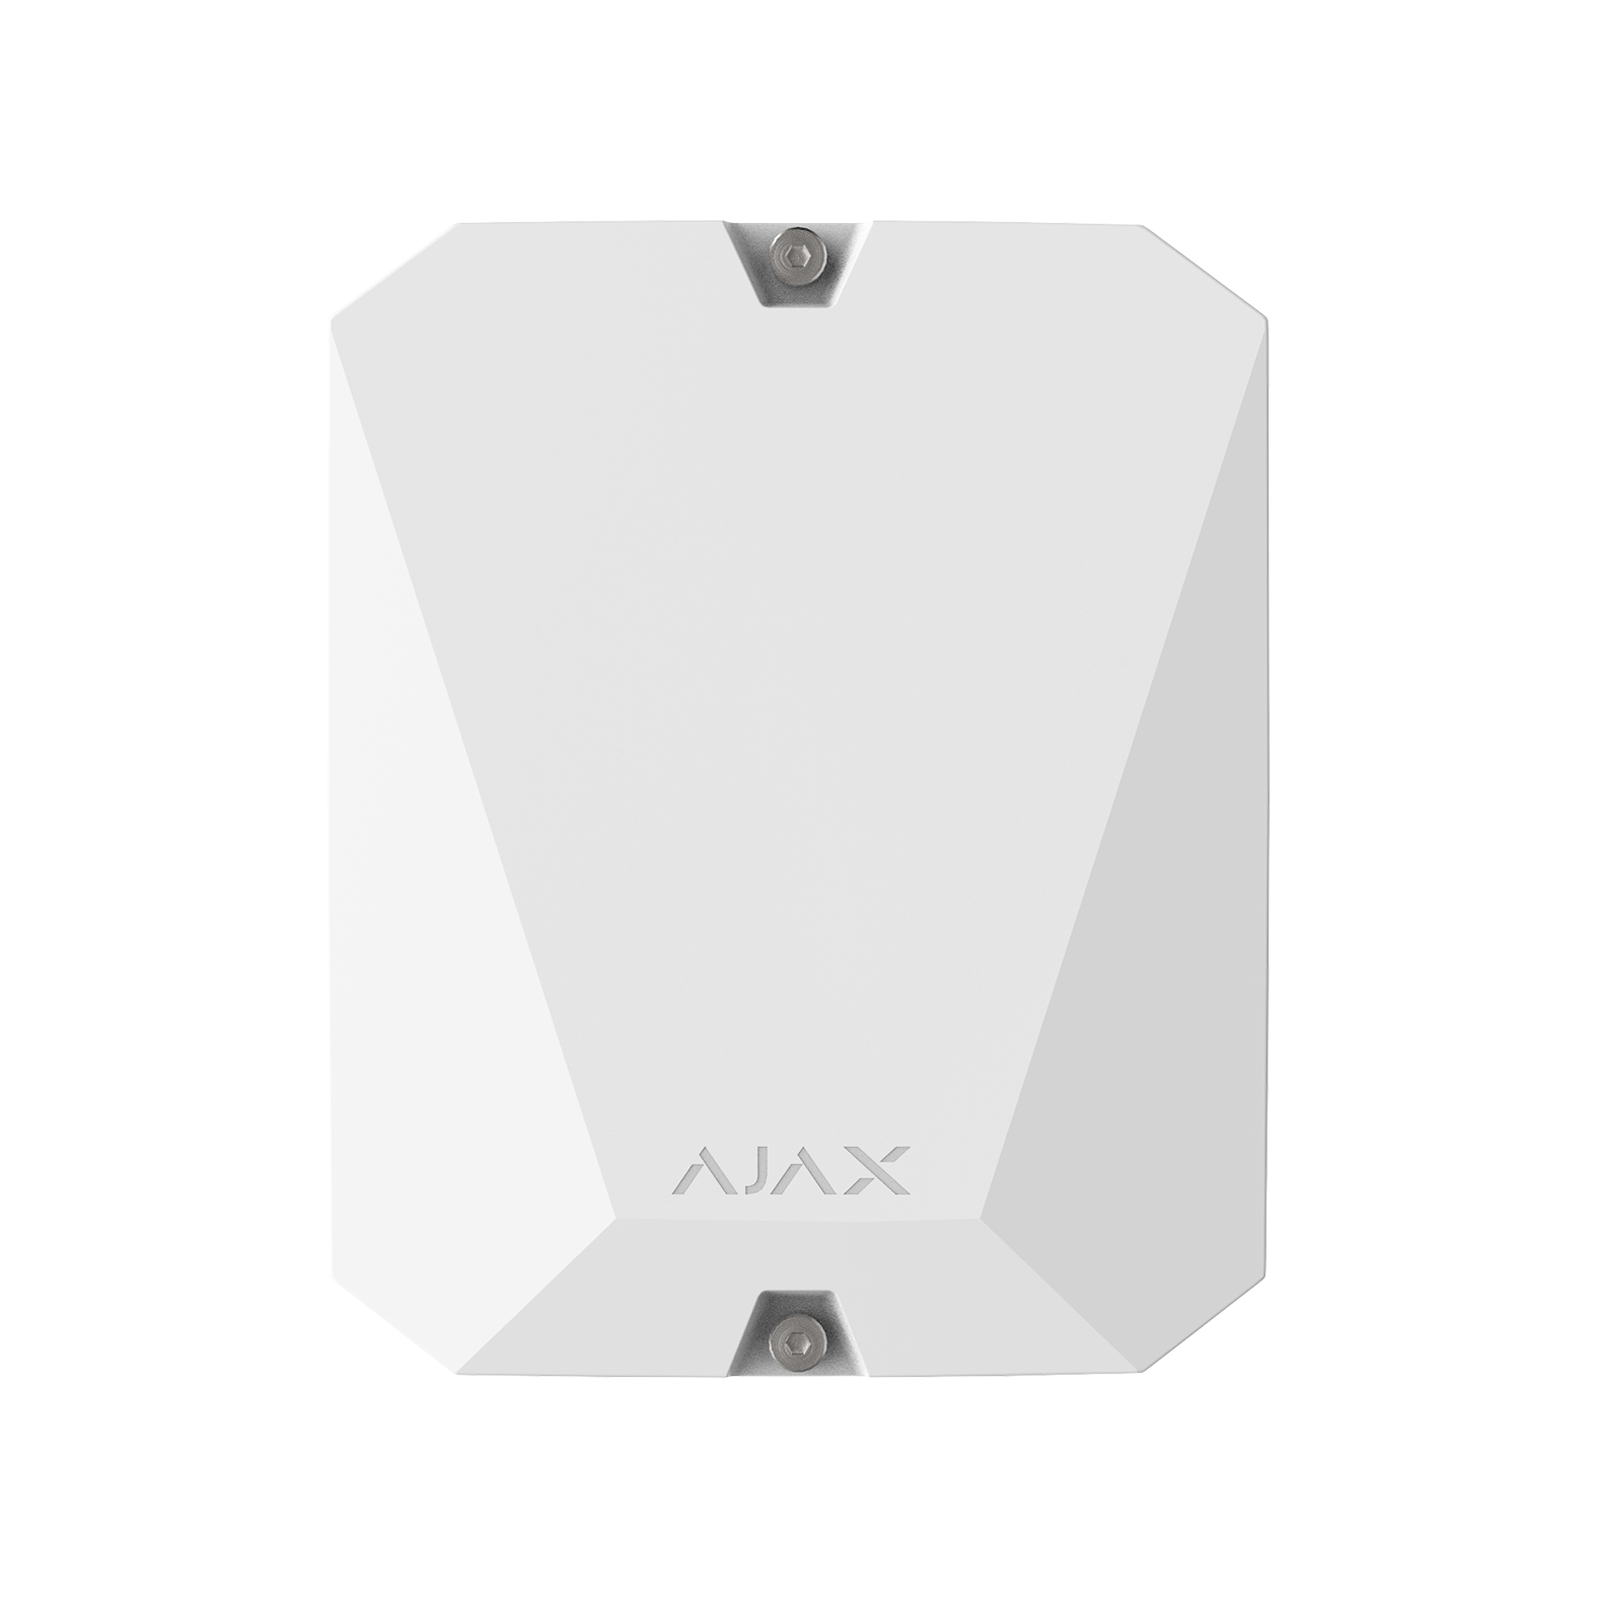 Ajax vhfBridge - модуль для підключення систем безпеки Ajax до сторонніх ДВЧ-передавачів (з корпусом) White